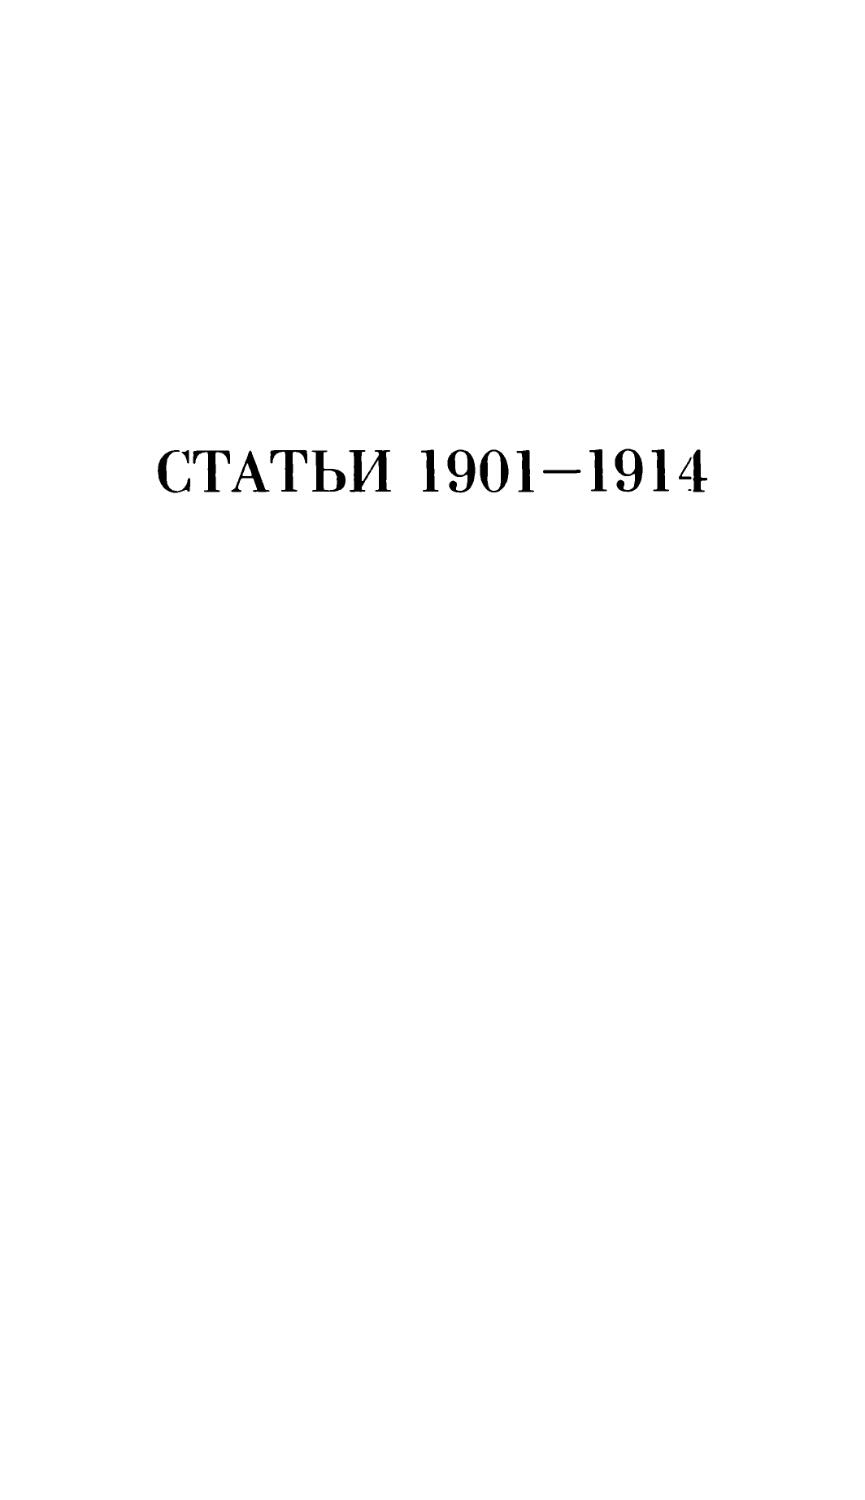 СТАТЬИ 1901-1914